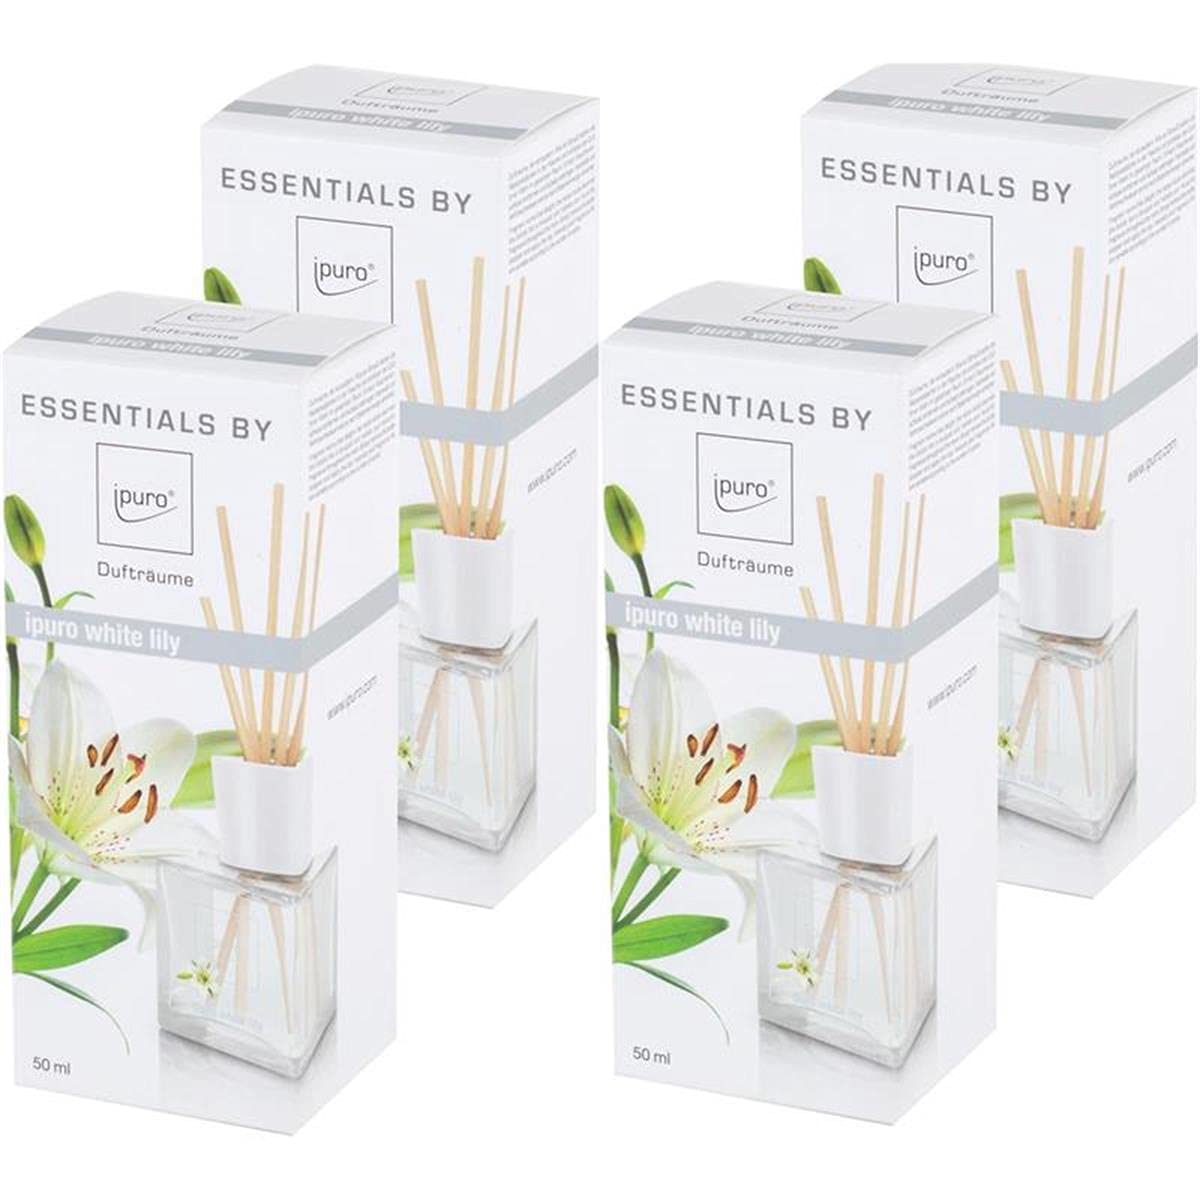 Essentials by Ipuro White lily 50ml Raumduft (4er Pack)